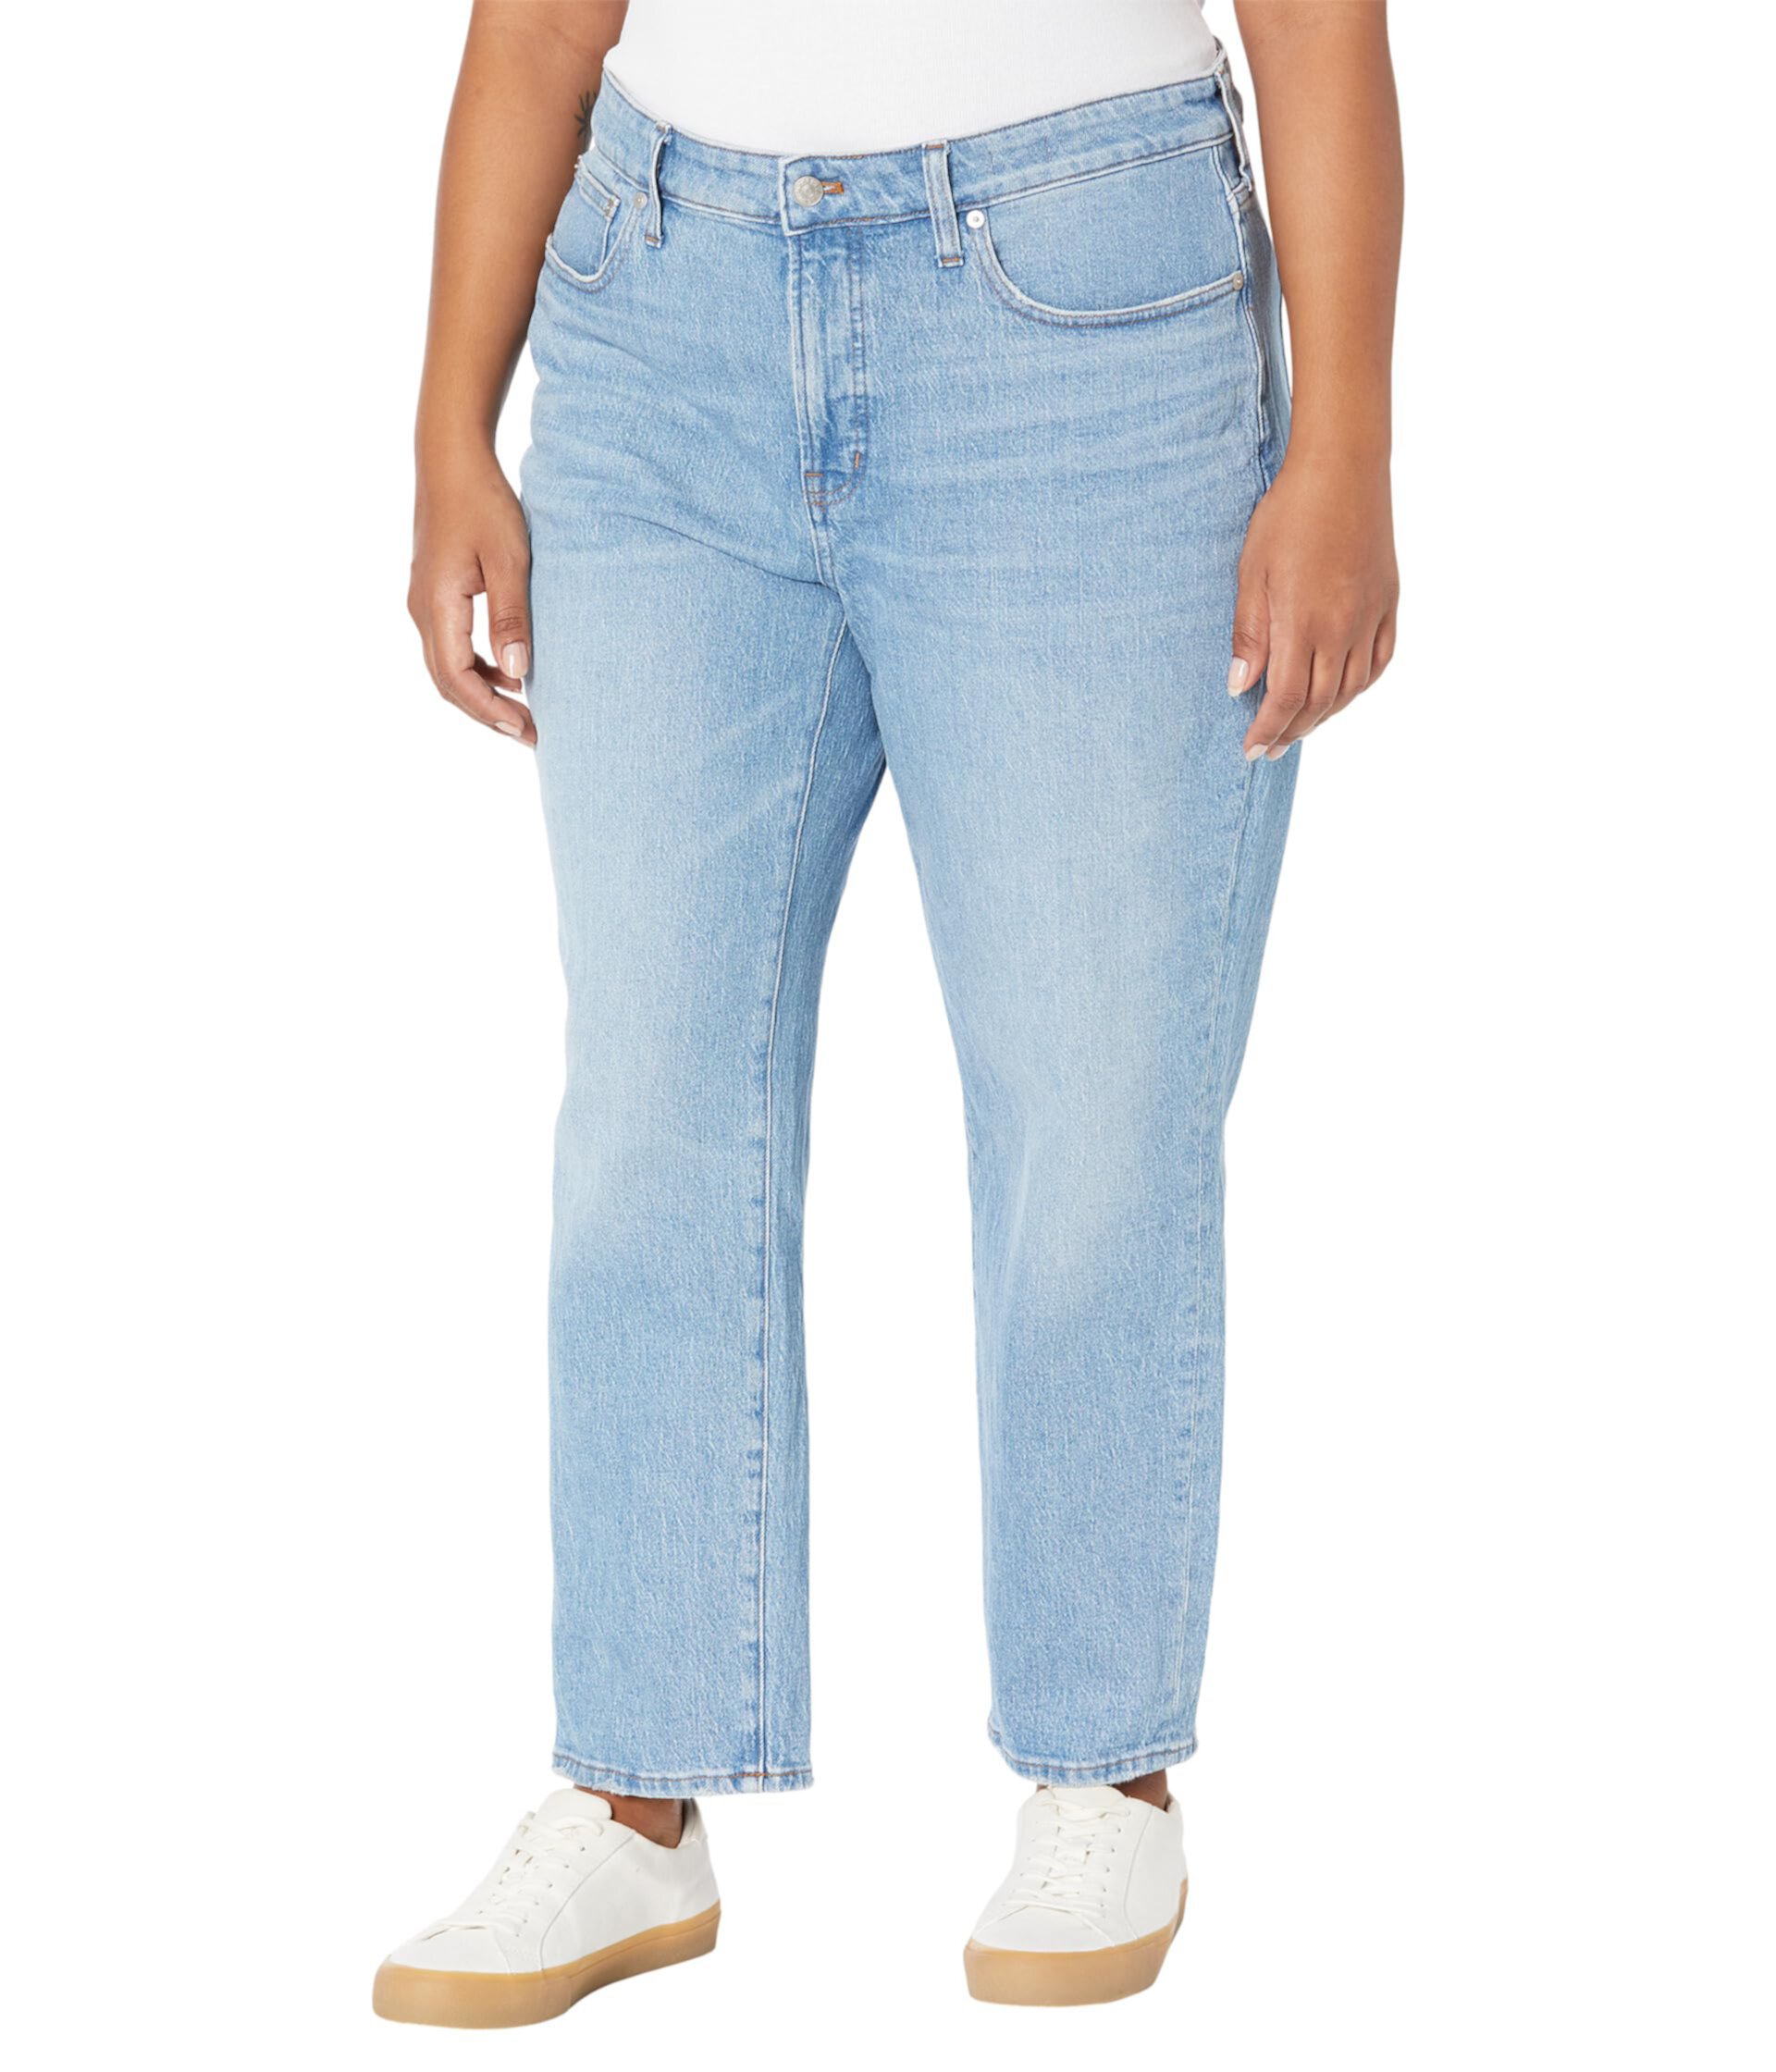 Прямые джинсы The Plus Perfect Vintage цвета Ferman Wash Madewell